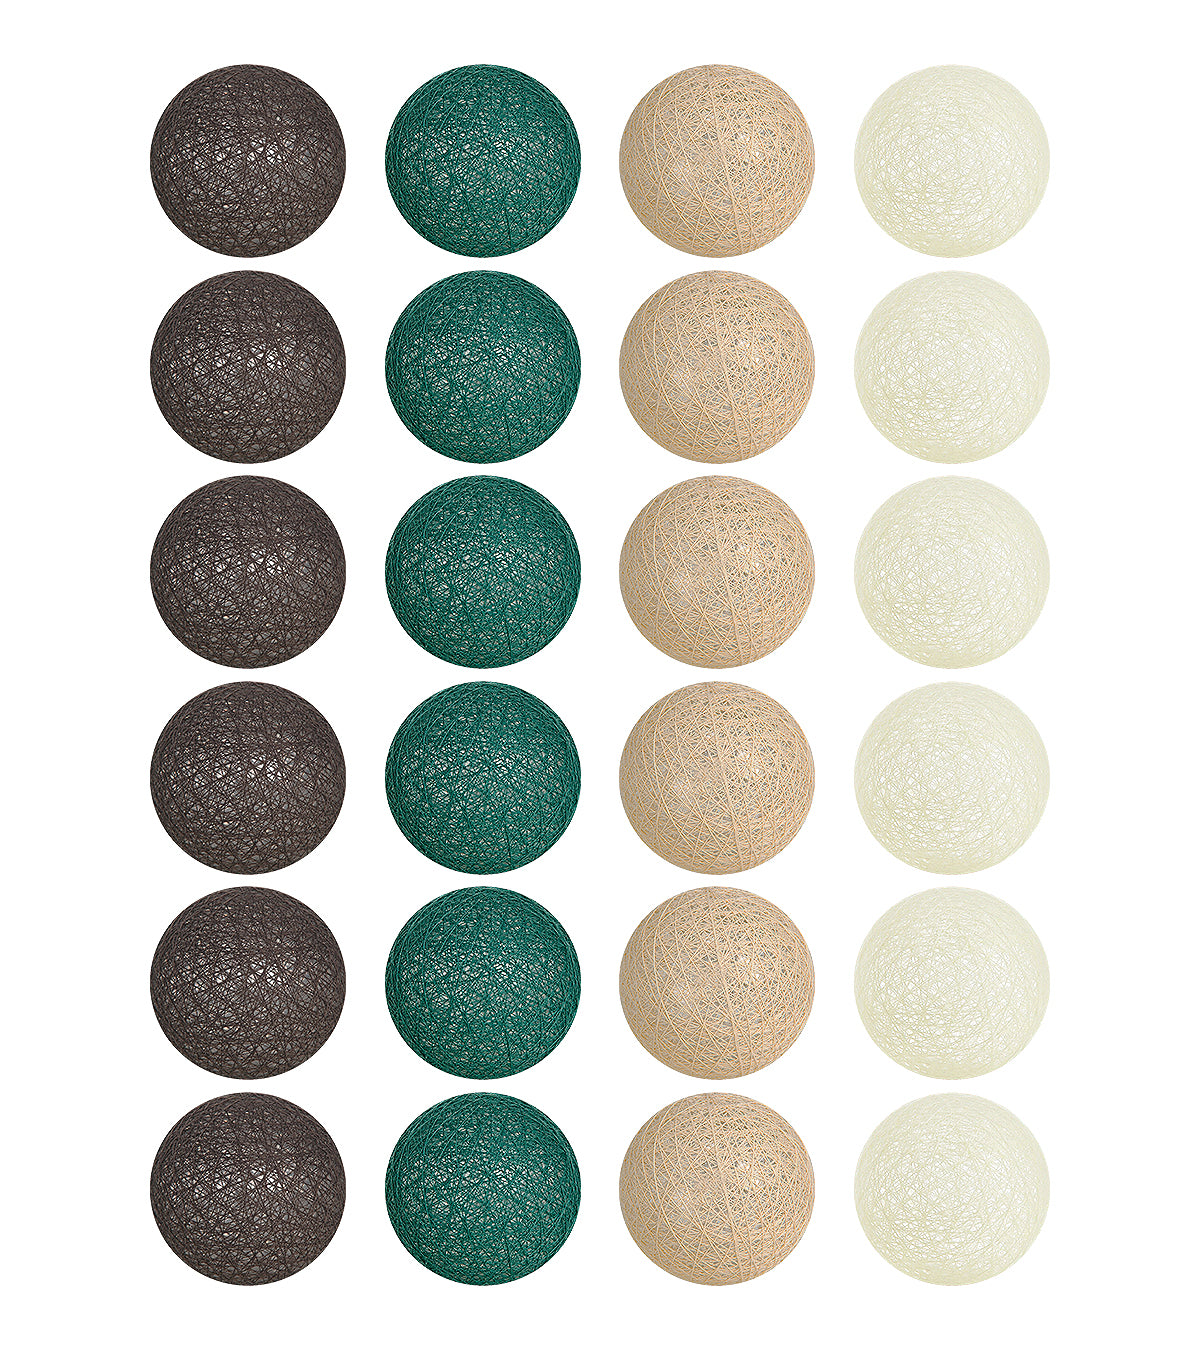 Guirlande lumineuse 24 boules de coton (vert, beige, marron) - Éclairage décoratif intérieur